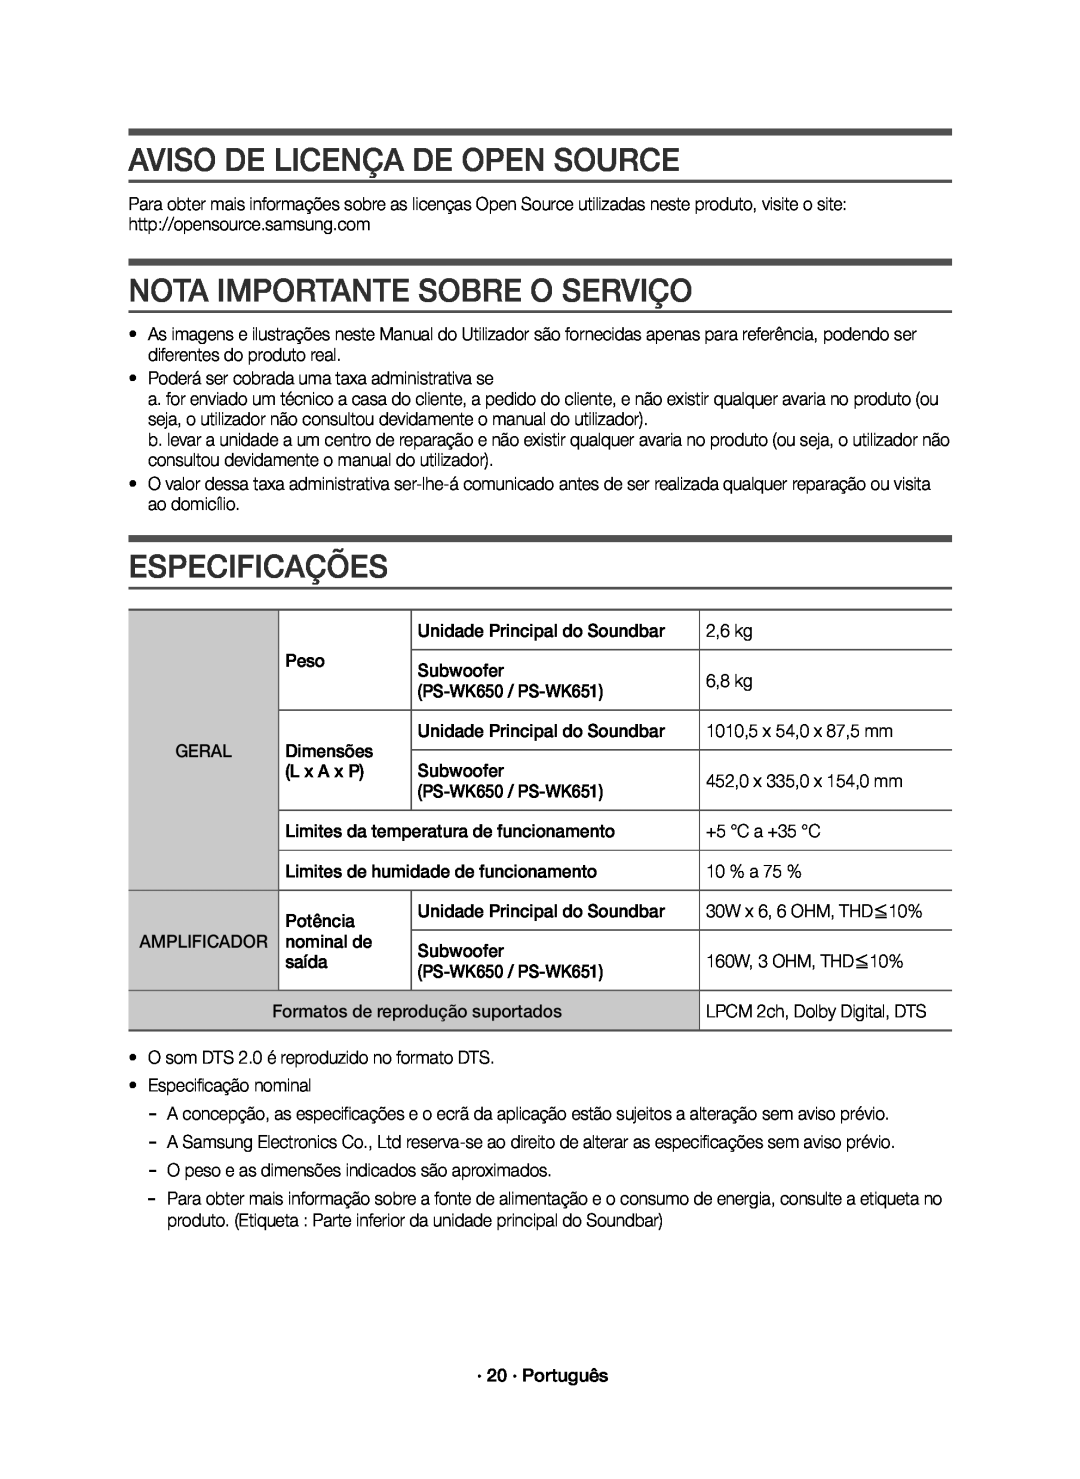 Samsung HW-K651/ZF, HW-K650/ZF Aviso De Licença De Open Source, Nota Importante Sobre O Serviço, Especificações, Geral 